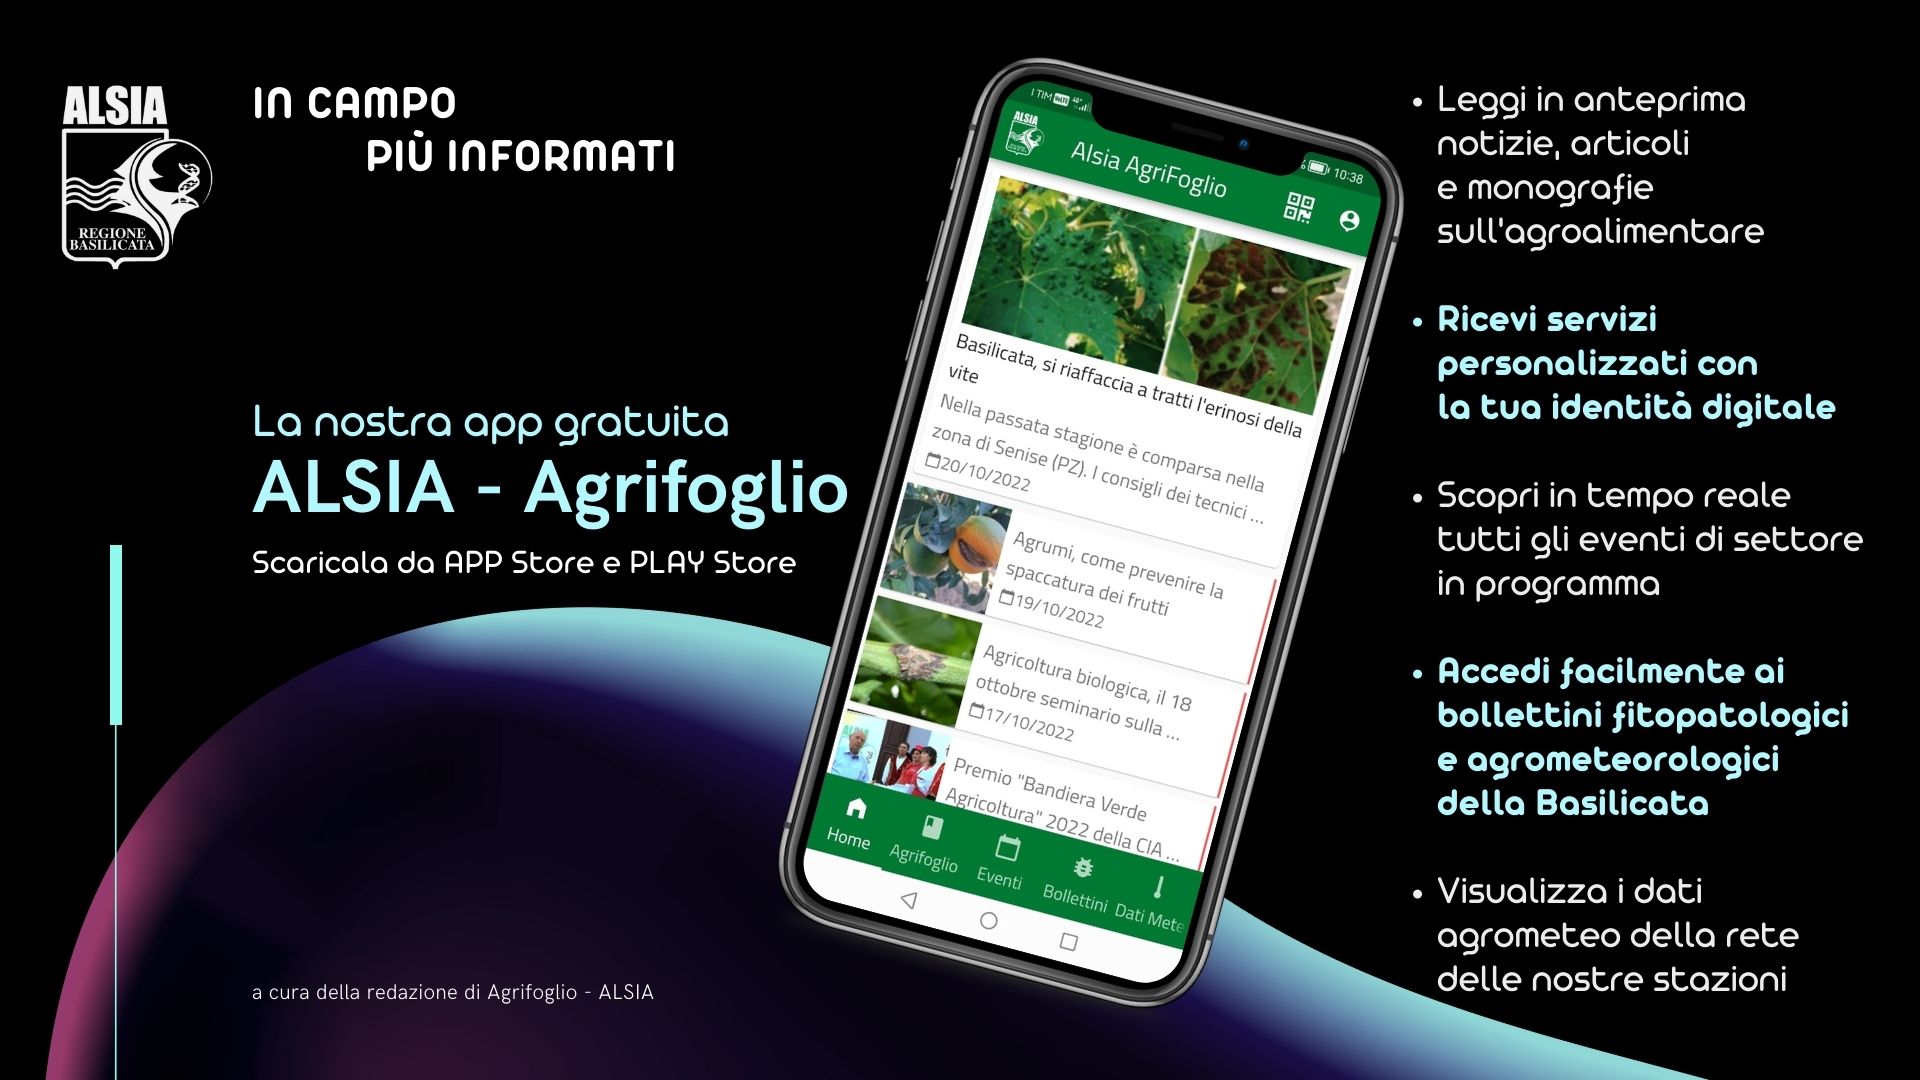 “In campo più informati”: con l’APP ALSIA-Agrifoglio, notizie utili sull’agricoltura sostenibile e una “identità digitale” per ricevere consigli tecnici personalizzati